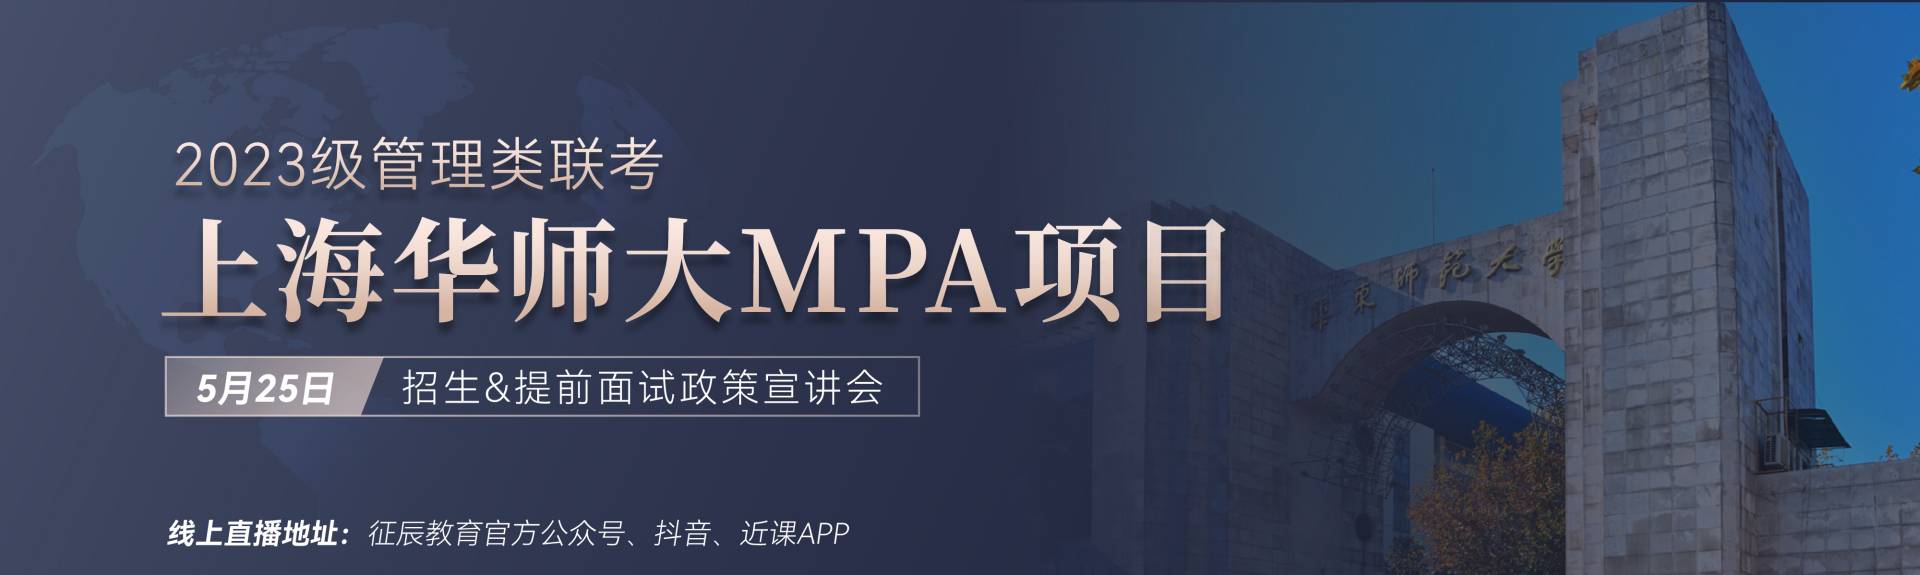 2023华东师范大学MPA招生&提面政策宣讲会